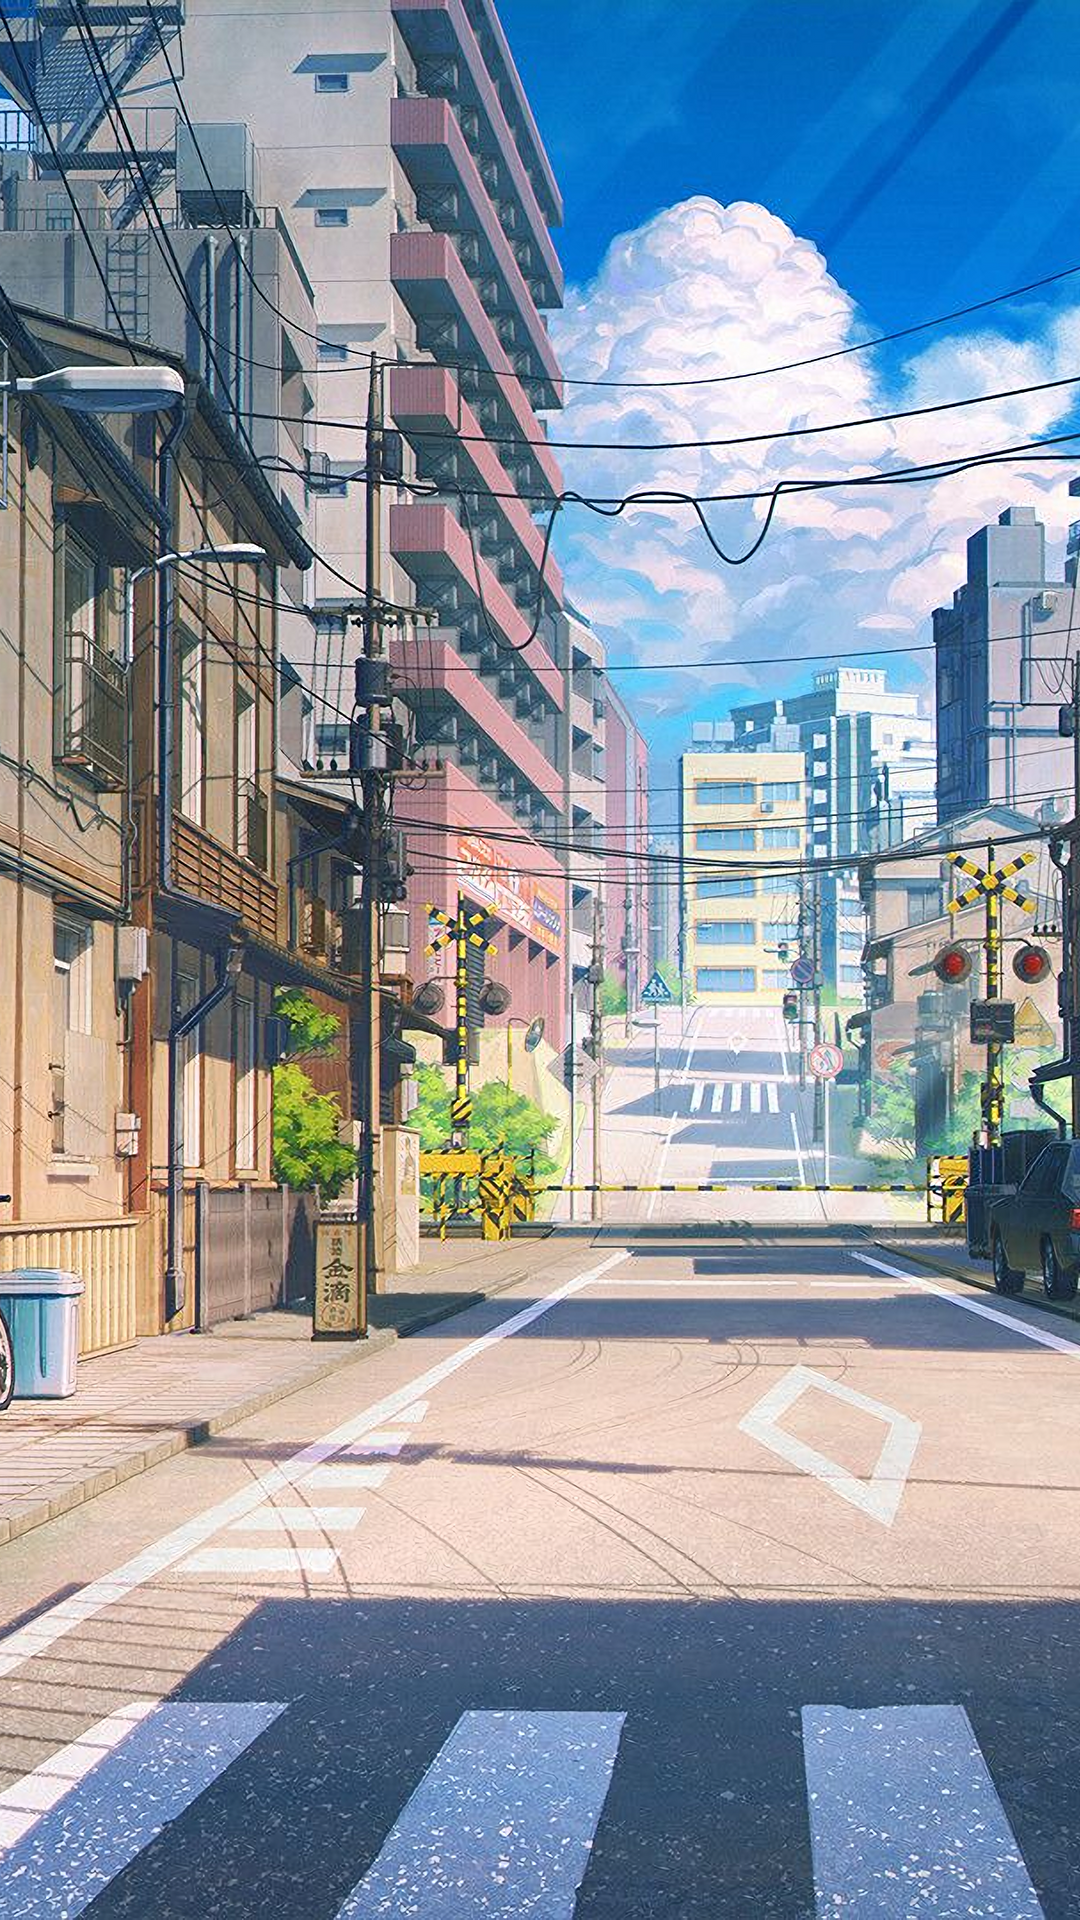 Bạn đang tìm kiếm một hình nền tuyệt đẹp để trang trí màn hình điện thoại hoặc máy tính bảng của mình? Bạn đã tìm đúng địa chỉ rồi đấy! Hình nền anime street này là sự kết hợp hoàn hảo giữa phong cách đường phố và anime. Hãy xem mà cảm nhận!